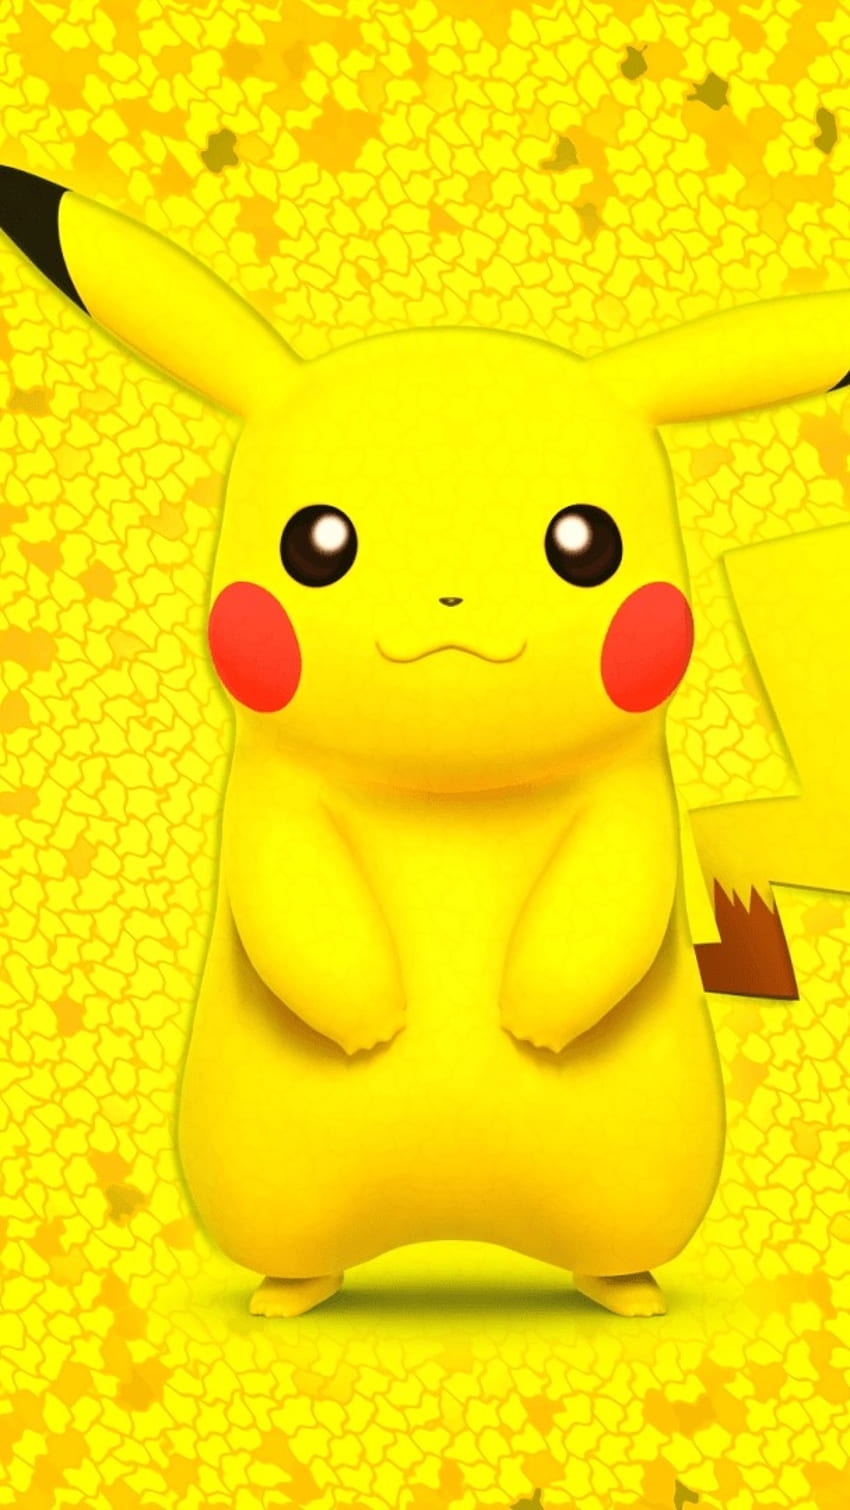 Pokémon Detective Pikachu: Bạn yêu thích thế giới Pokemon và đang tìm kiếm một bộ phim giải trí thú vị? Khám phá thế giới của siêu thám tử Pikachu trong bộ phim \